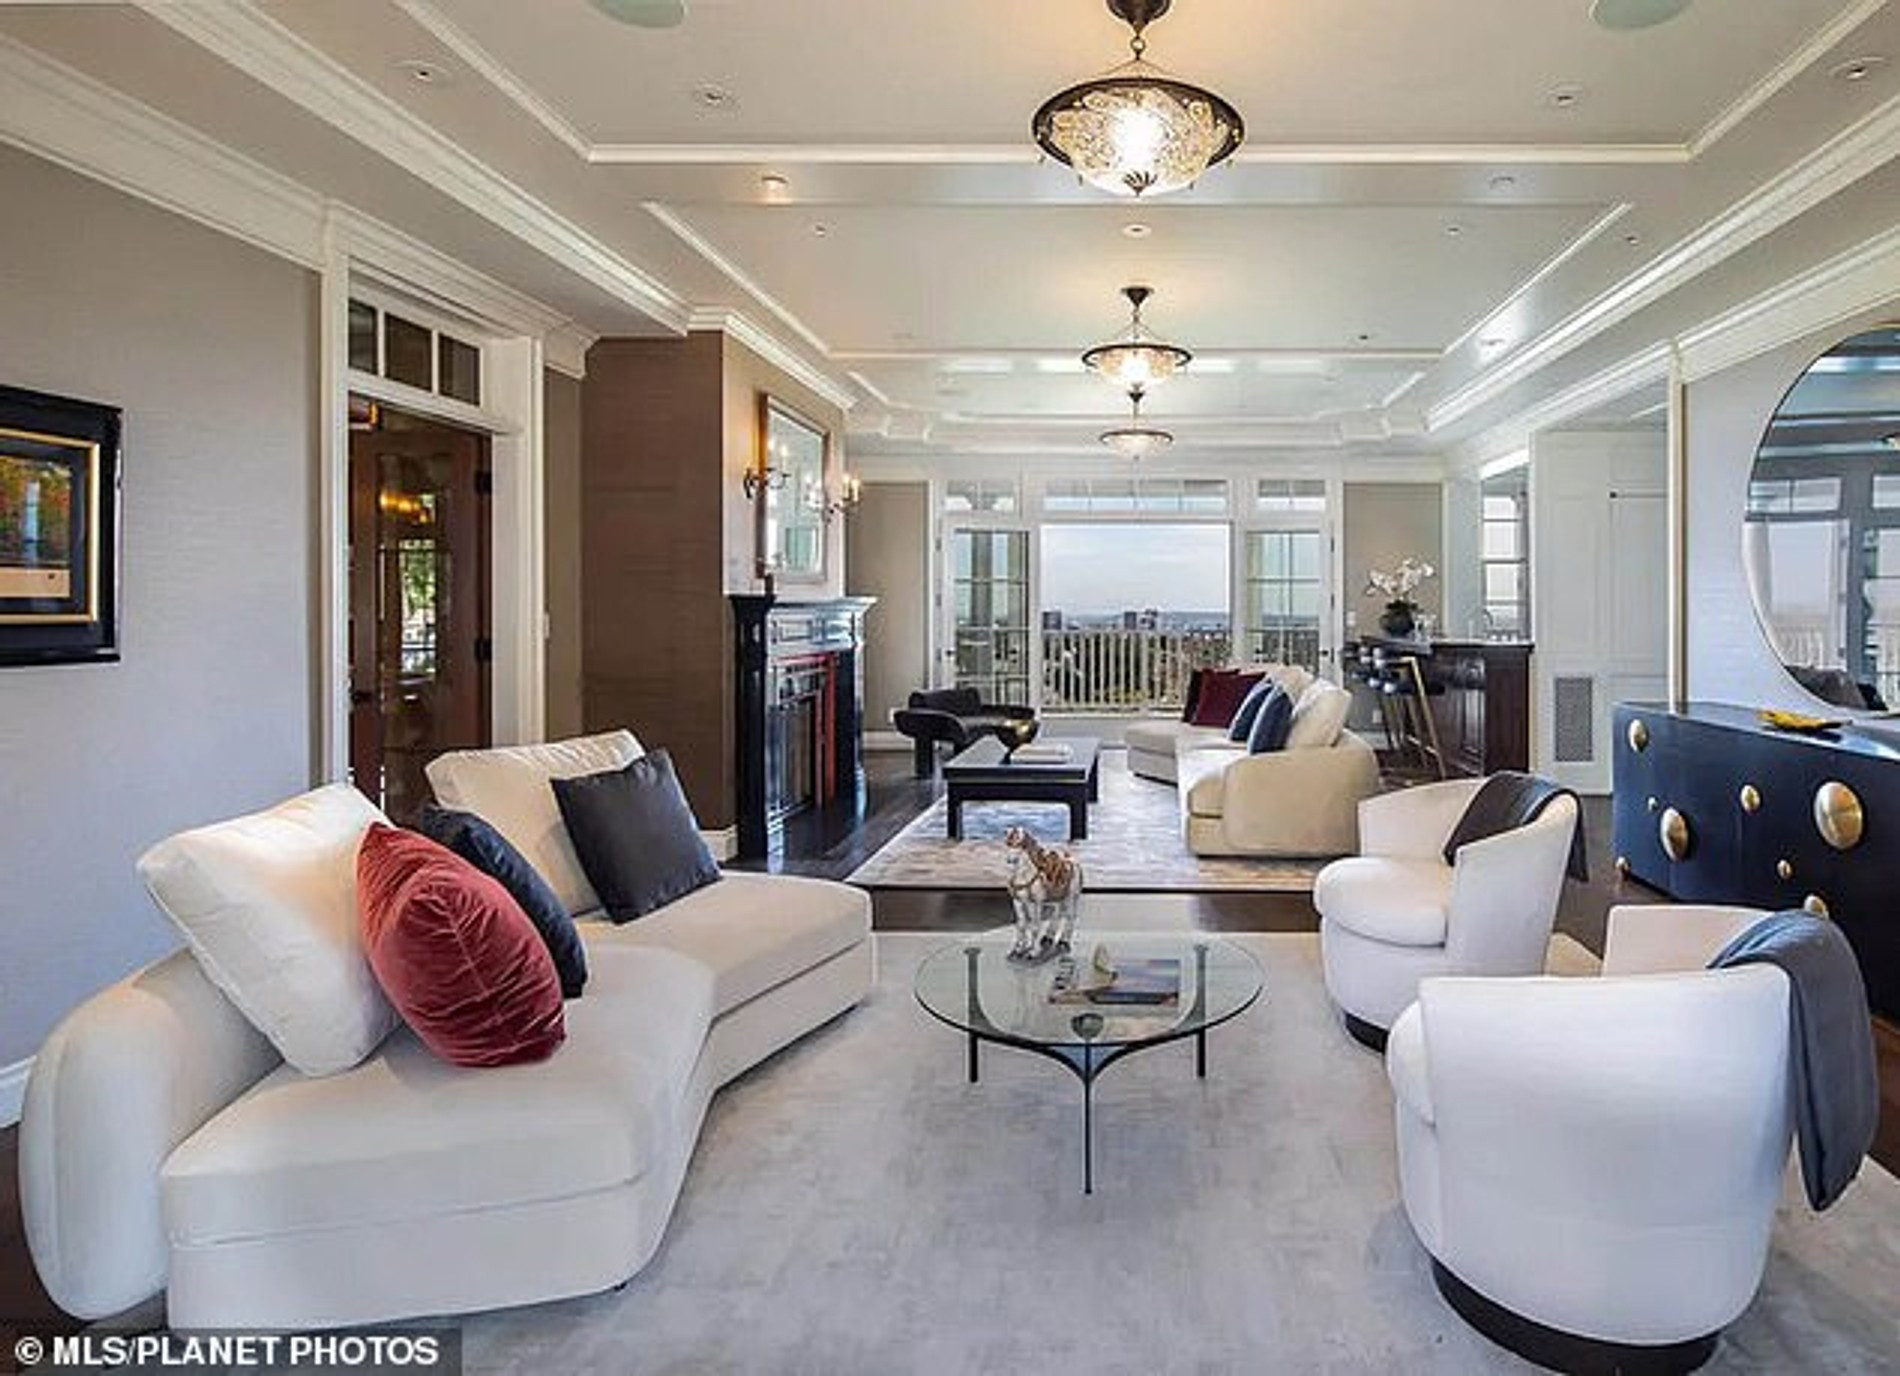 Дом стоимостью 64 миллиона долларов, который собираются купить Дженнифер Лопес и Бен Аффлек
Фото: MLS